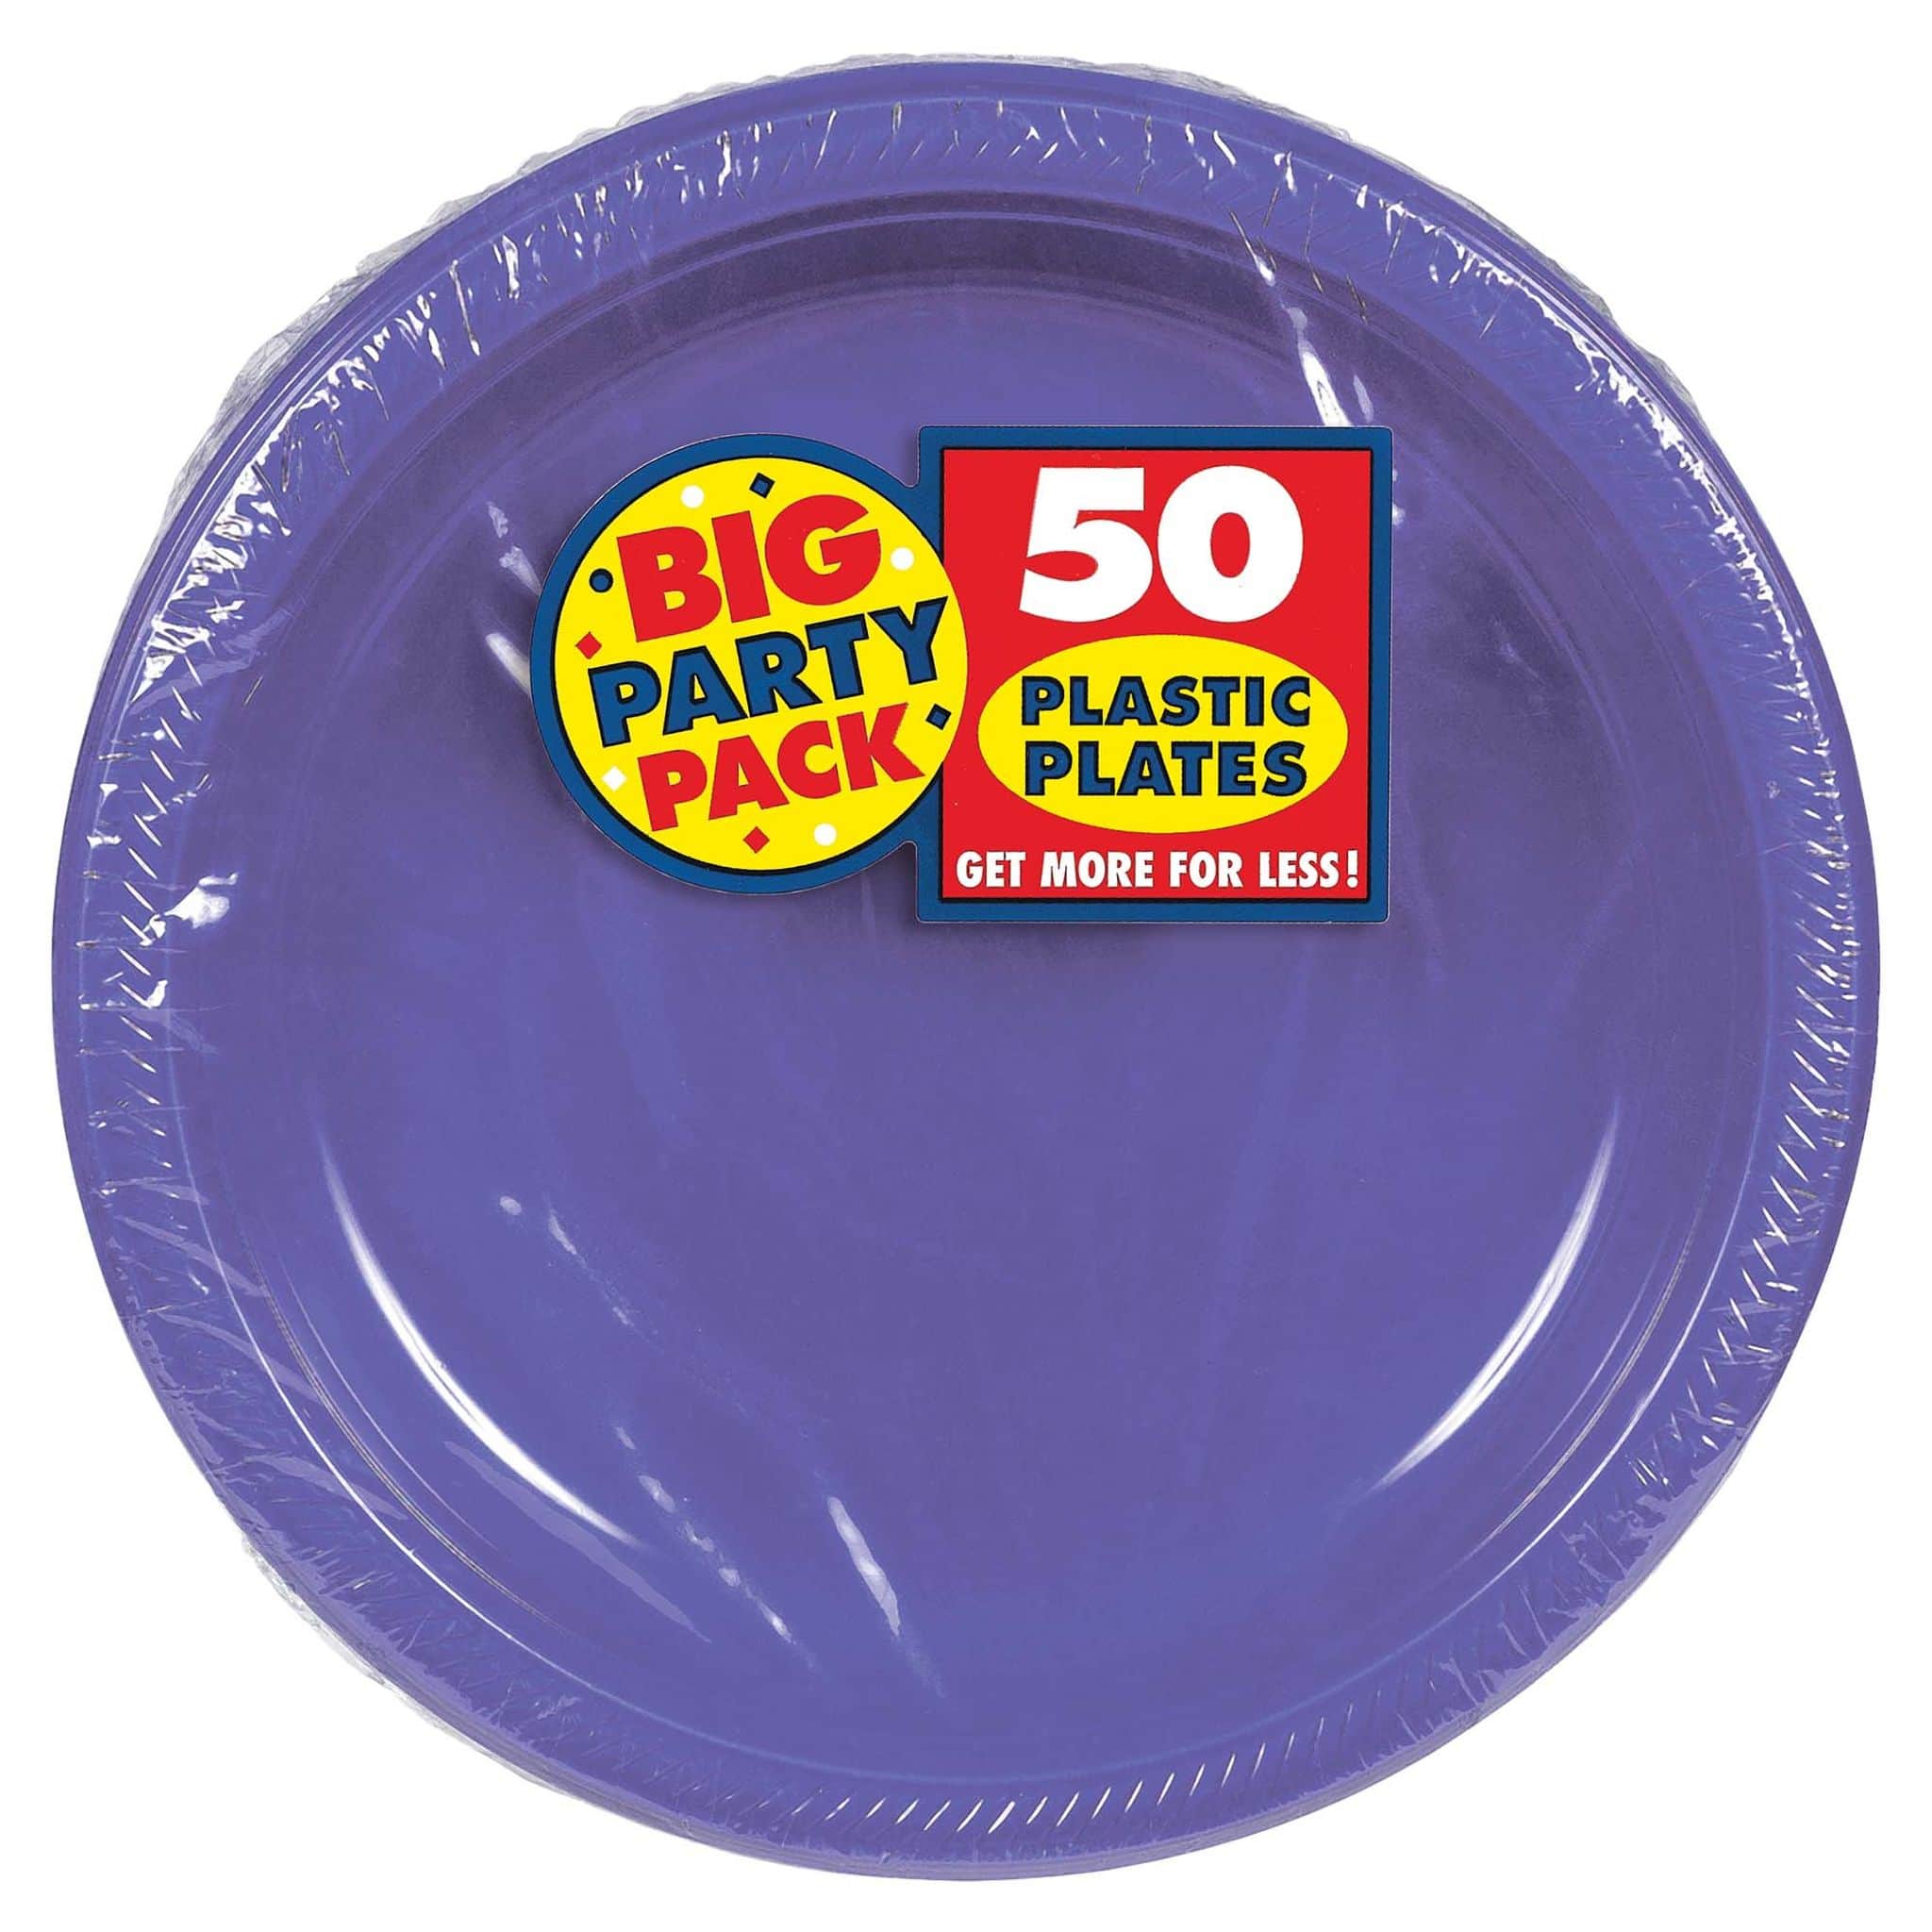 10.5" Round Plastic Plates